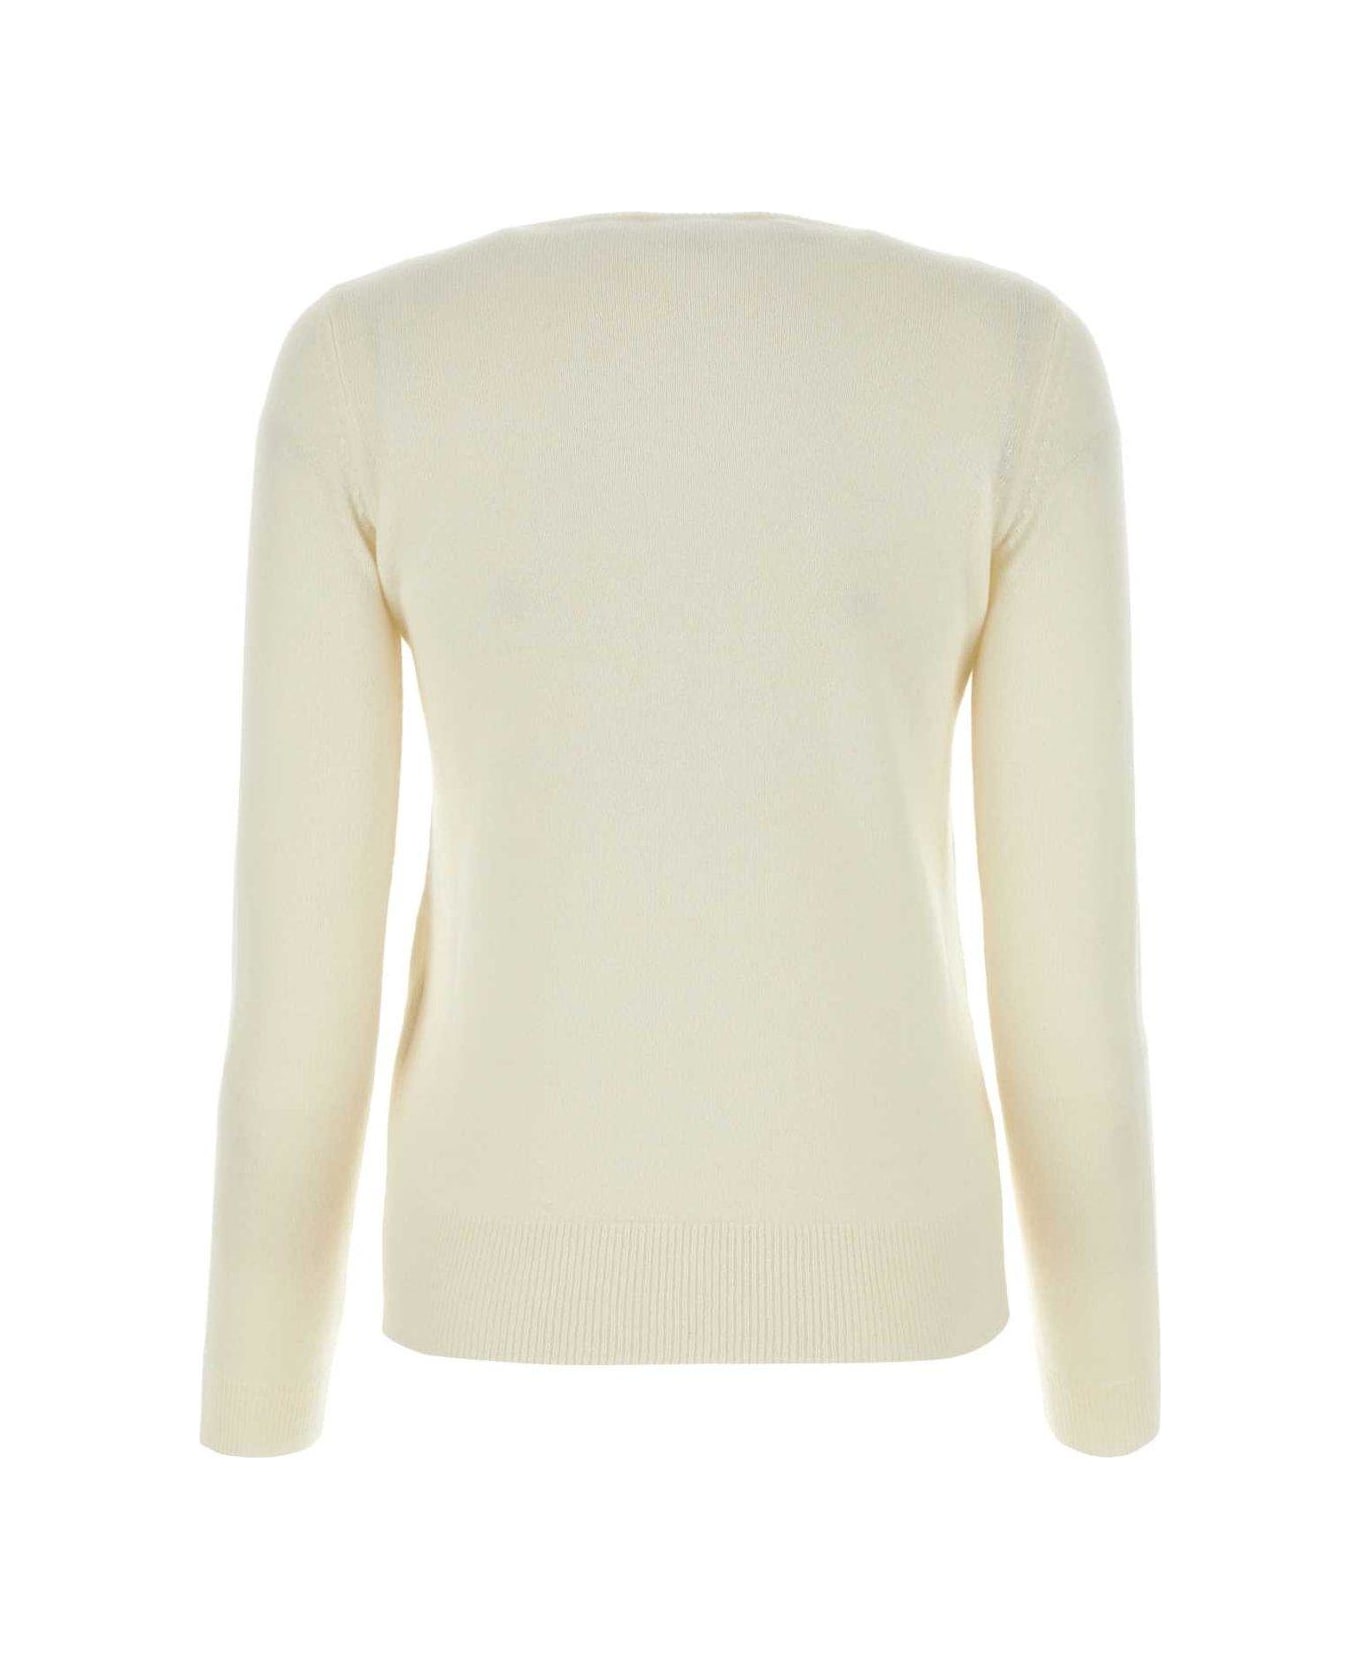 Max Mara Bari Wool And Cashmere Sweater - WHITE